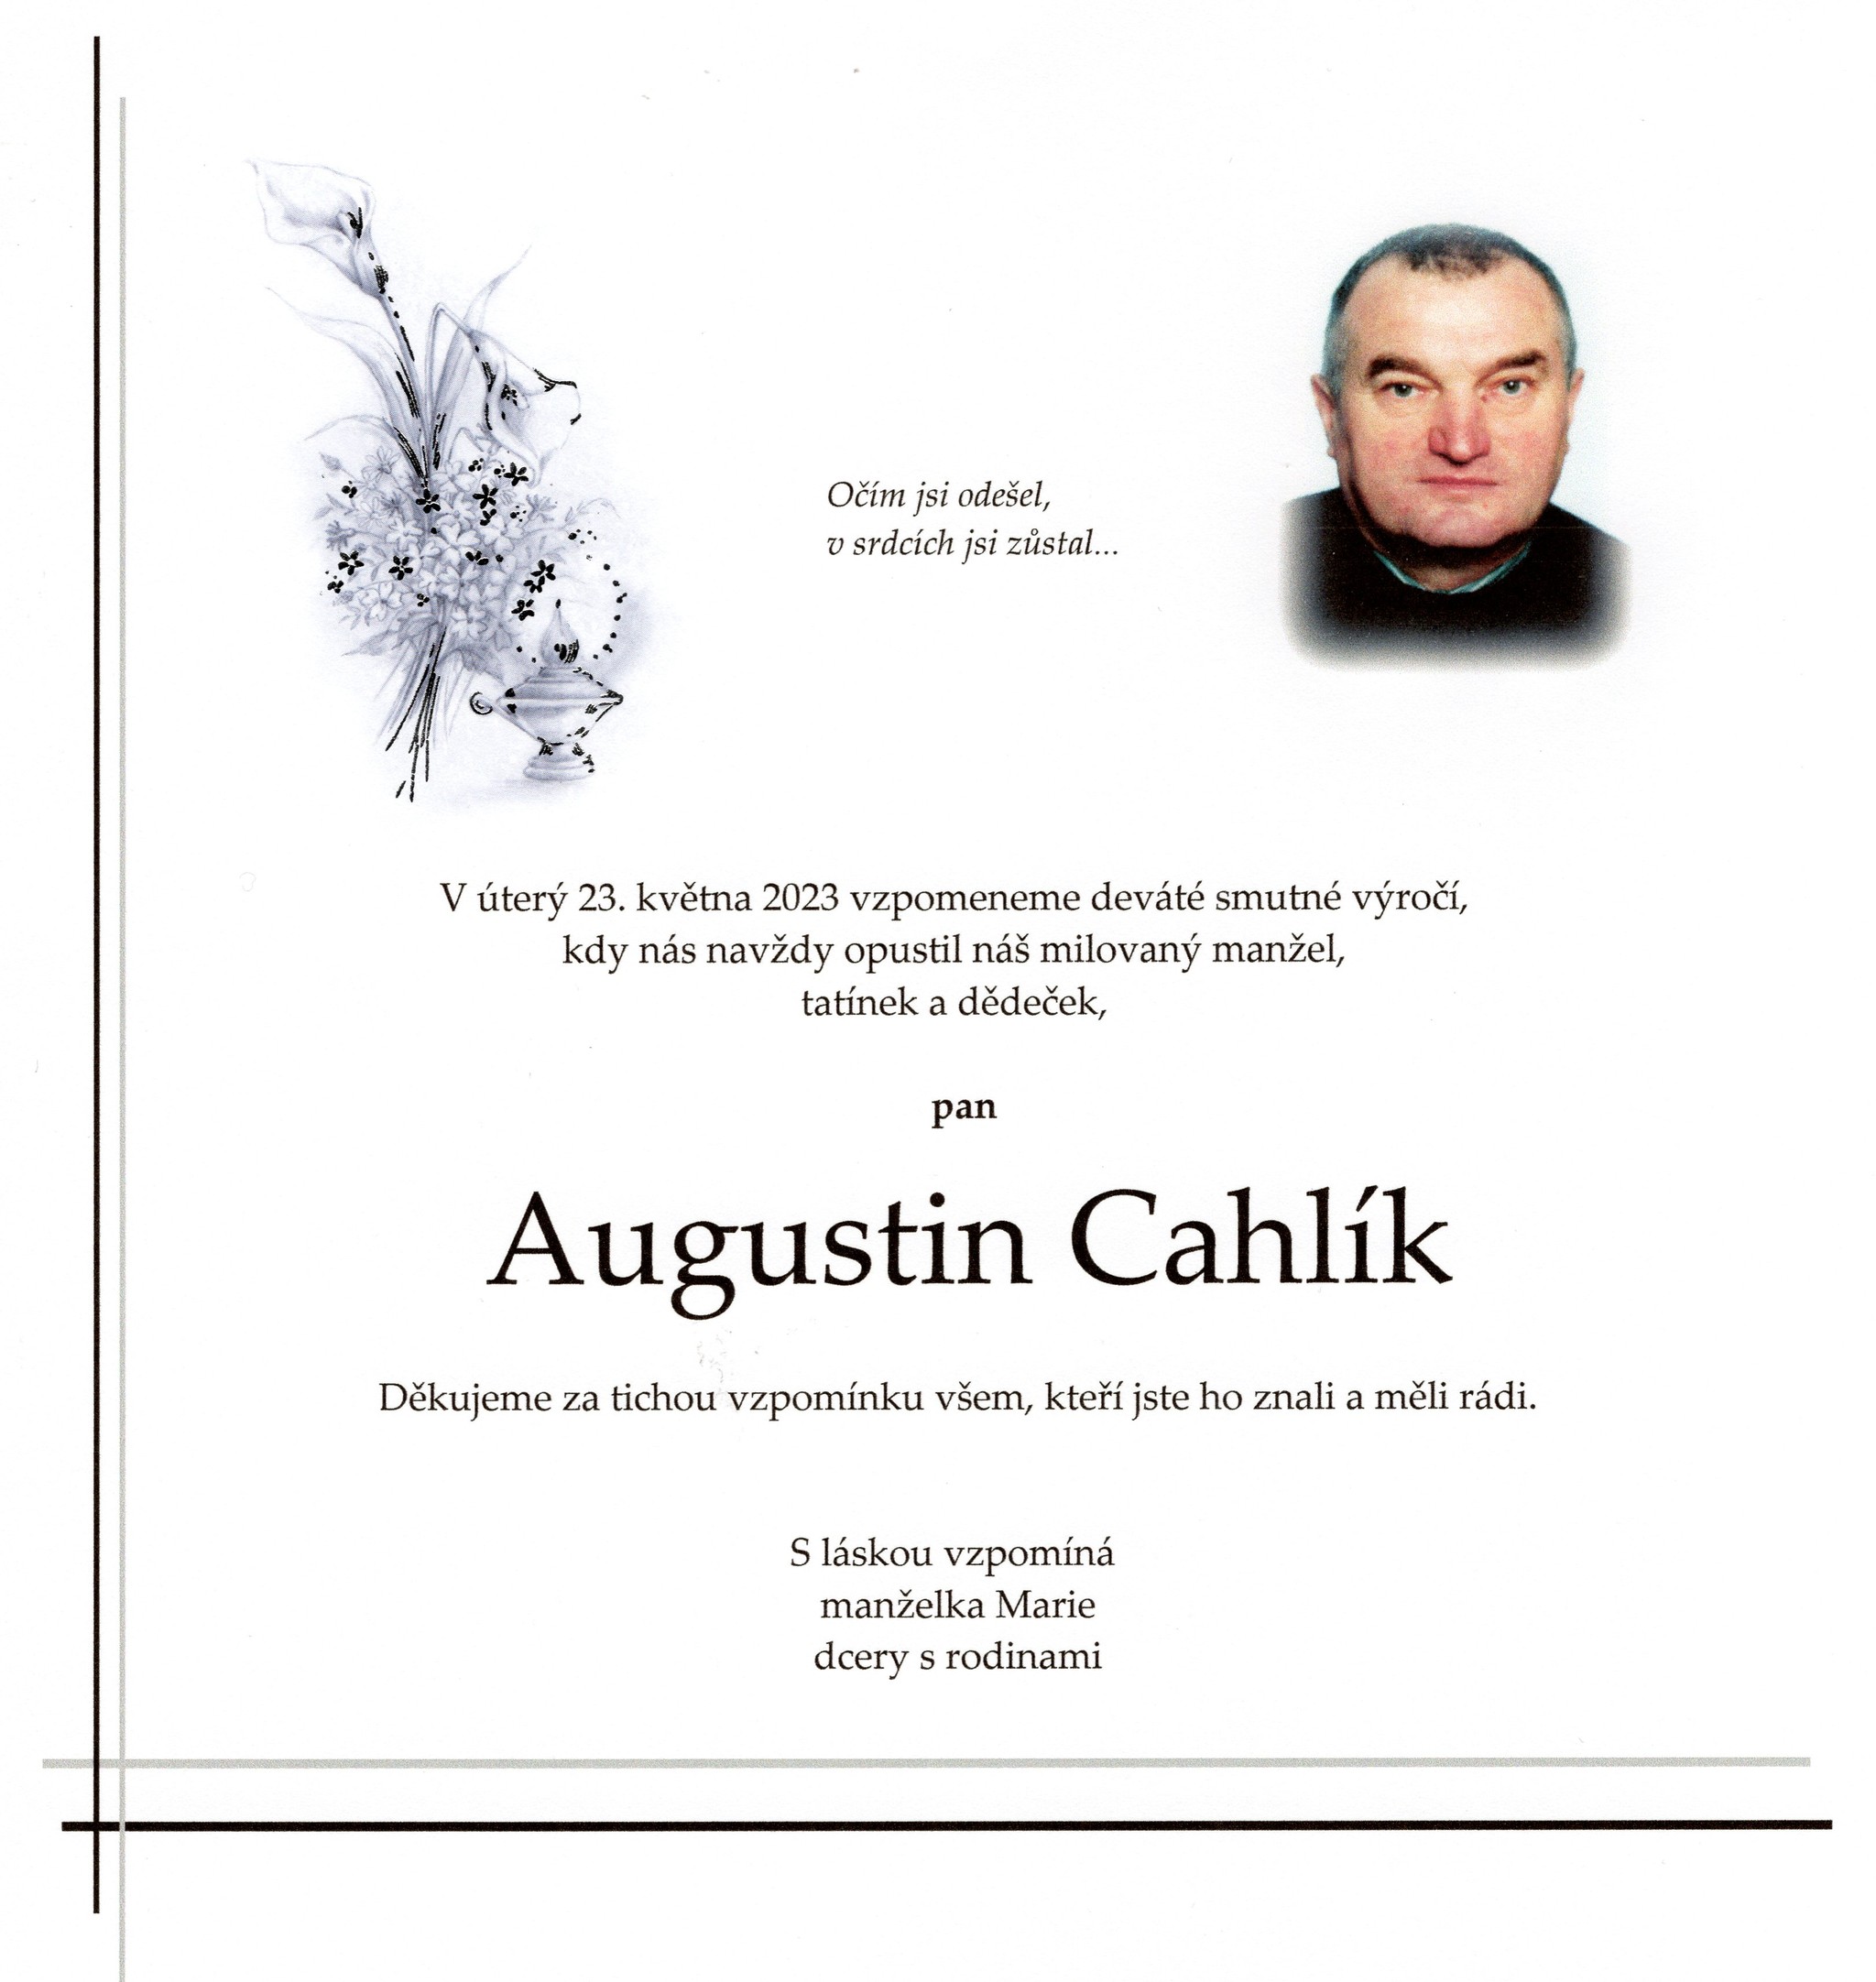 Augustin Cahlík